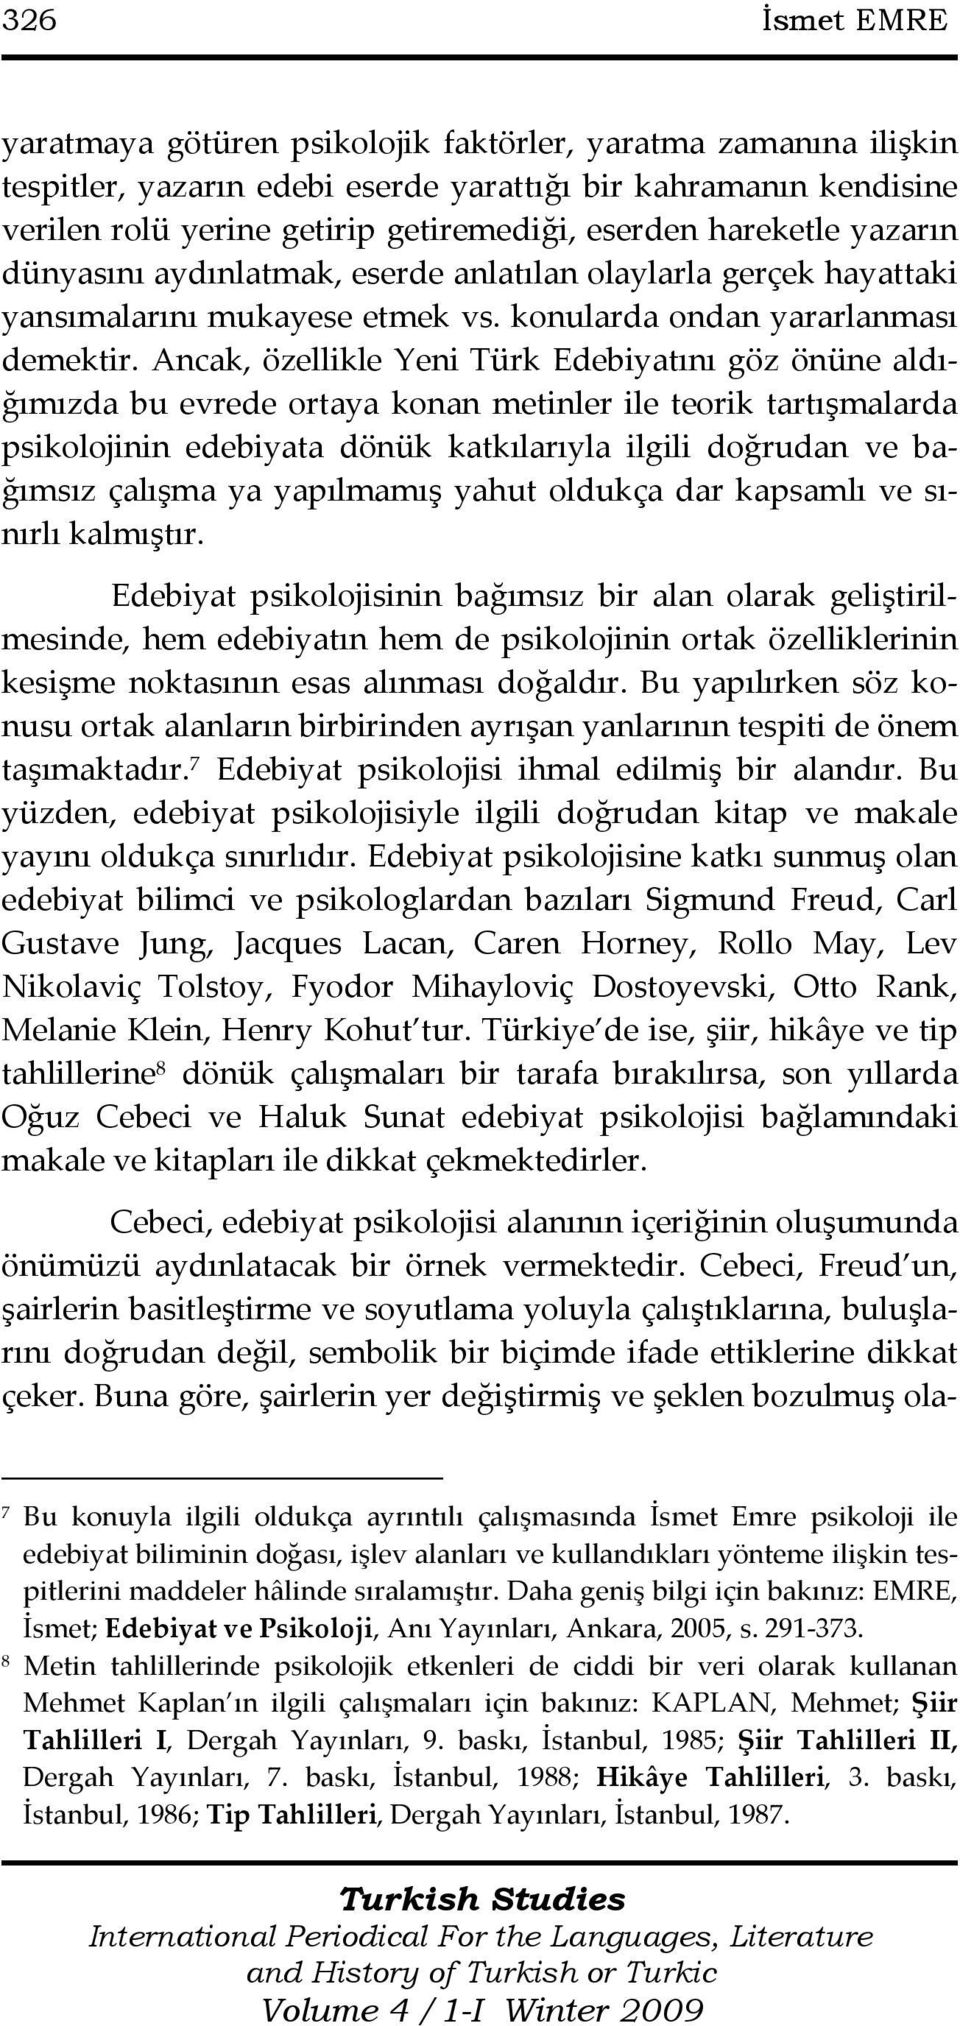 Ancak, özellikle Yeni Türk Edebiyatını göz önüne aldığımızda bu evrede ortaya konan metinler ile teorik tartışmalarda psikolojinin edebiyata dönük katkılarıyla ilgili doğrudan ve bağımsız çalışma ya